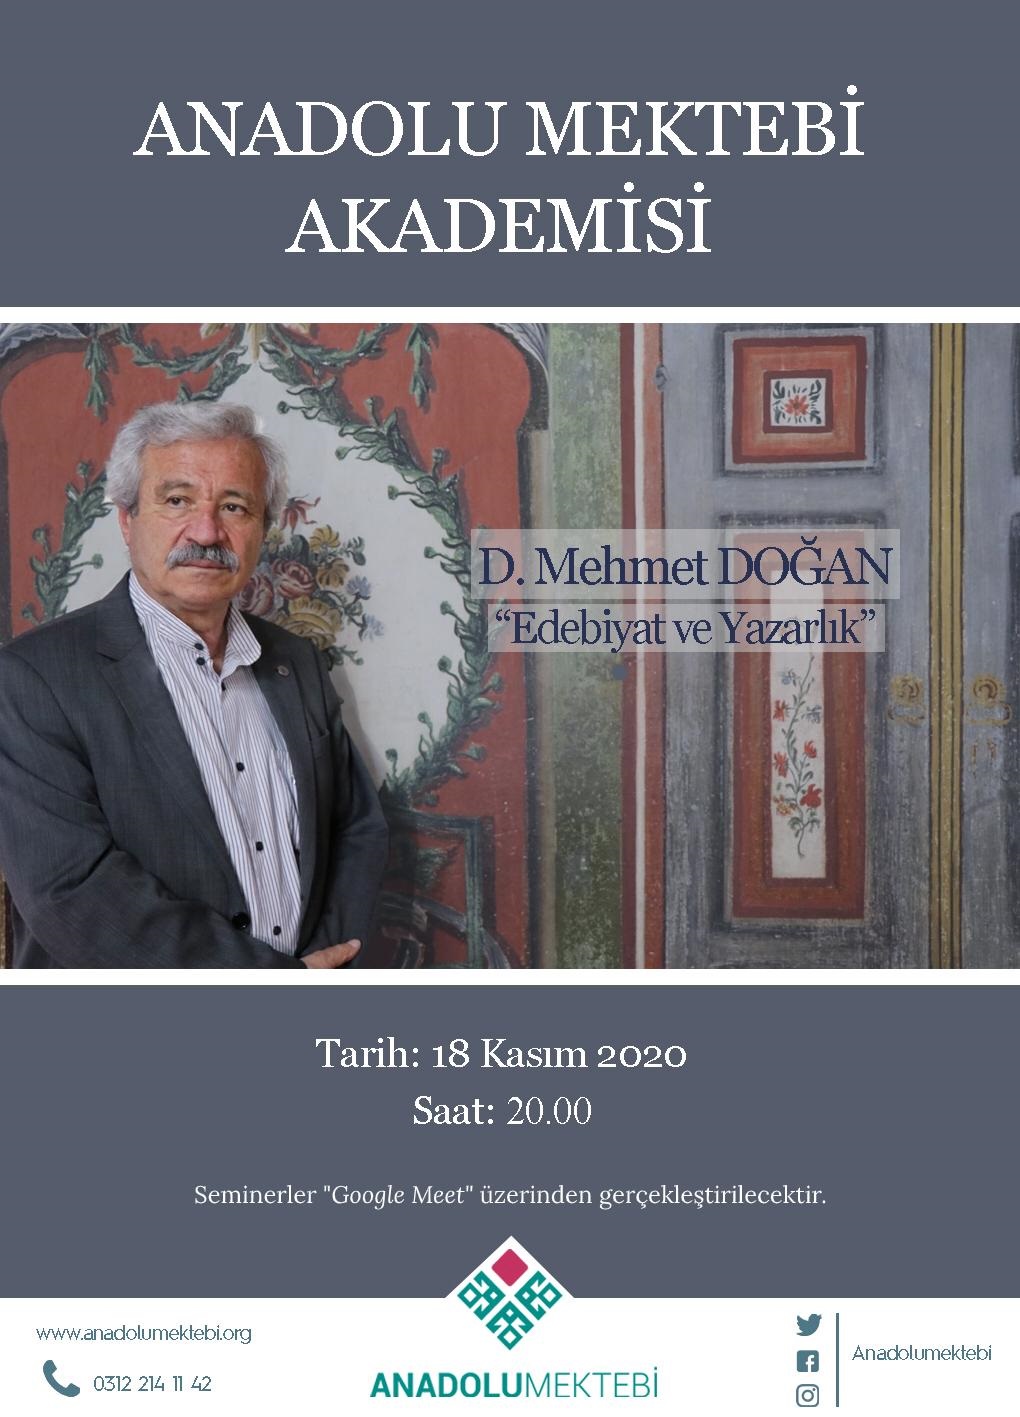 D. Mehmet Doğan, Anadolu Mektebi Akademisi’nde konuşacak